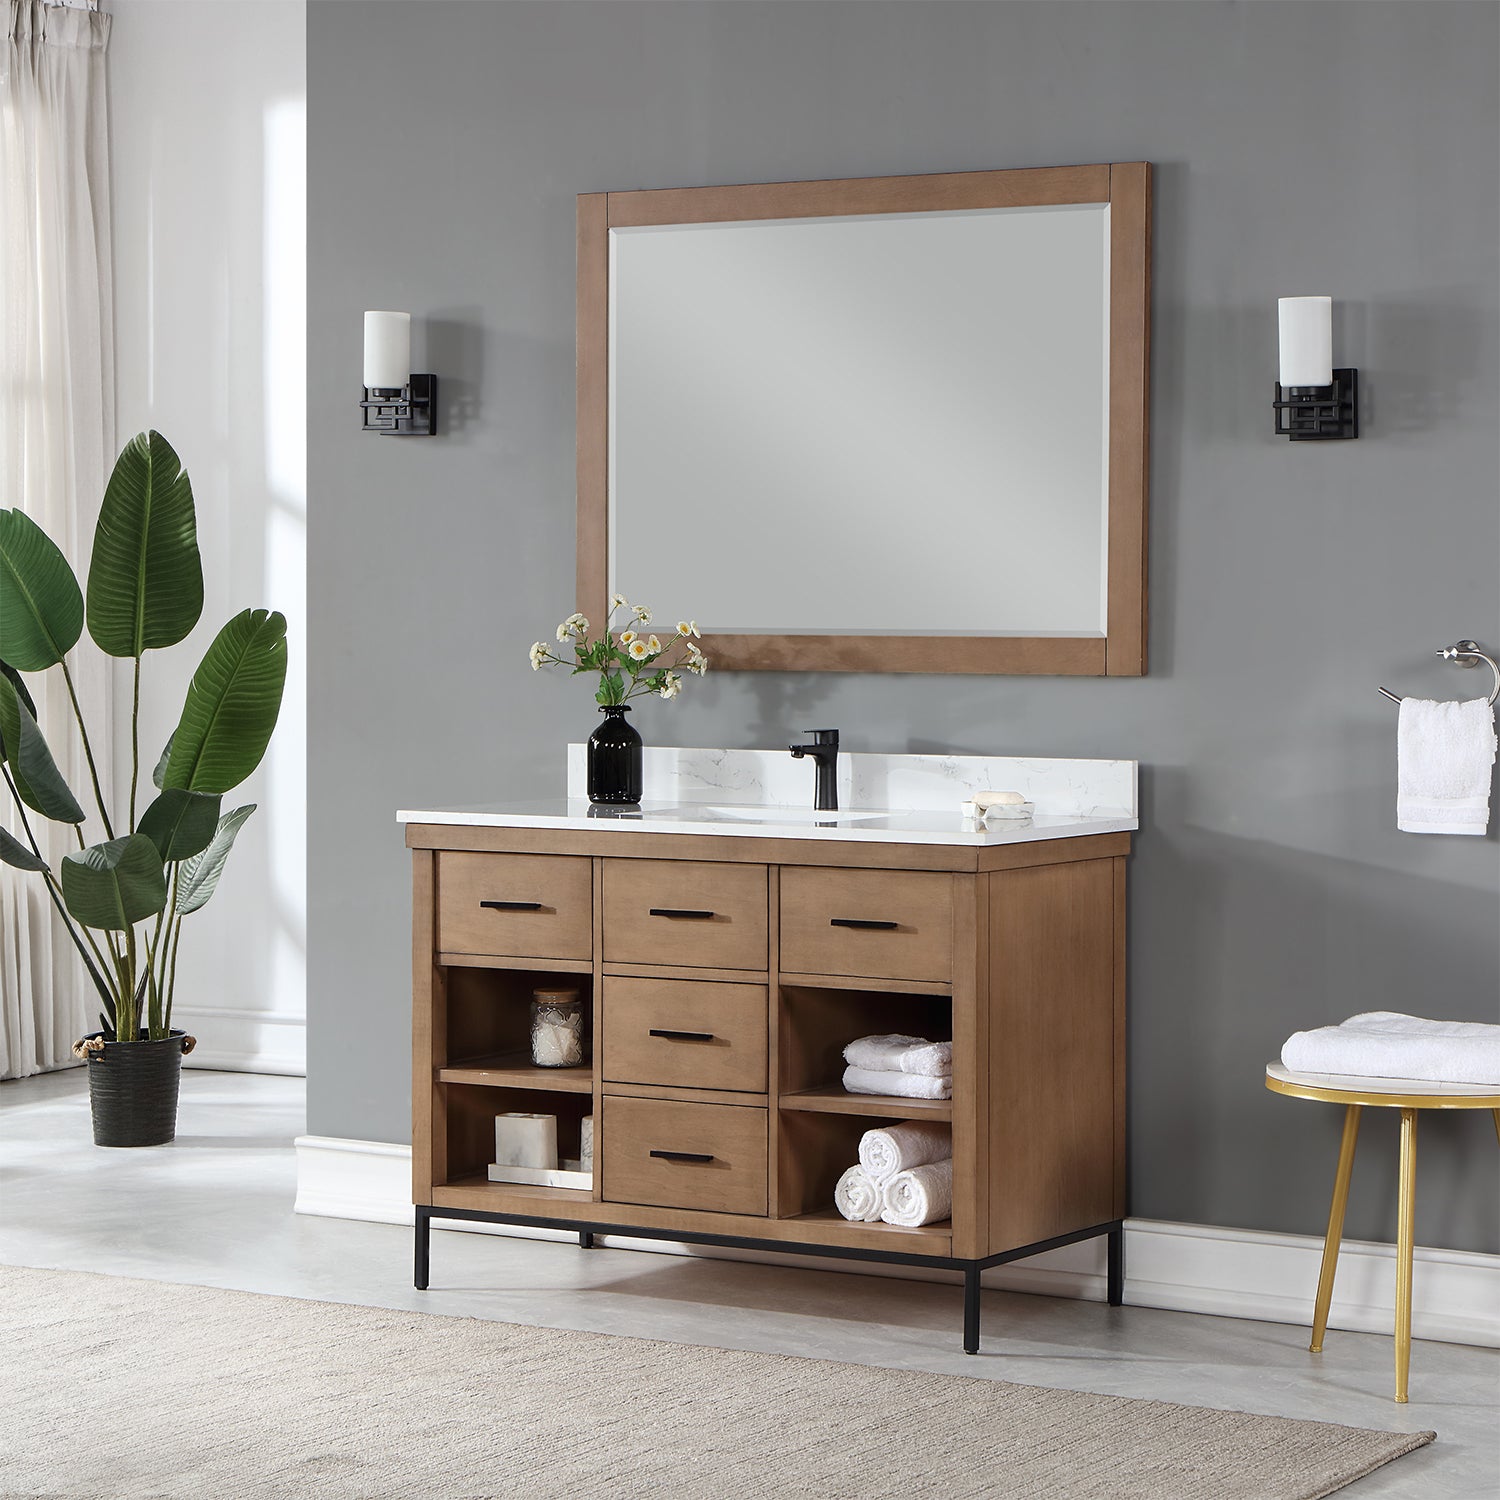 Kesia 48" Single Bathroom Vanity Set with Aosta White Composite Stone Countertop